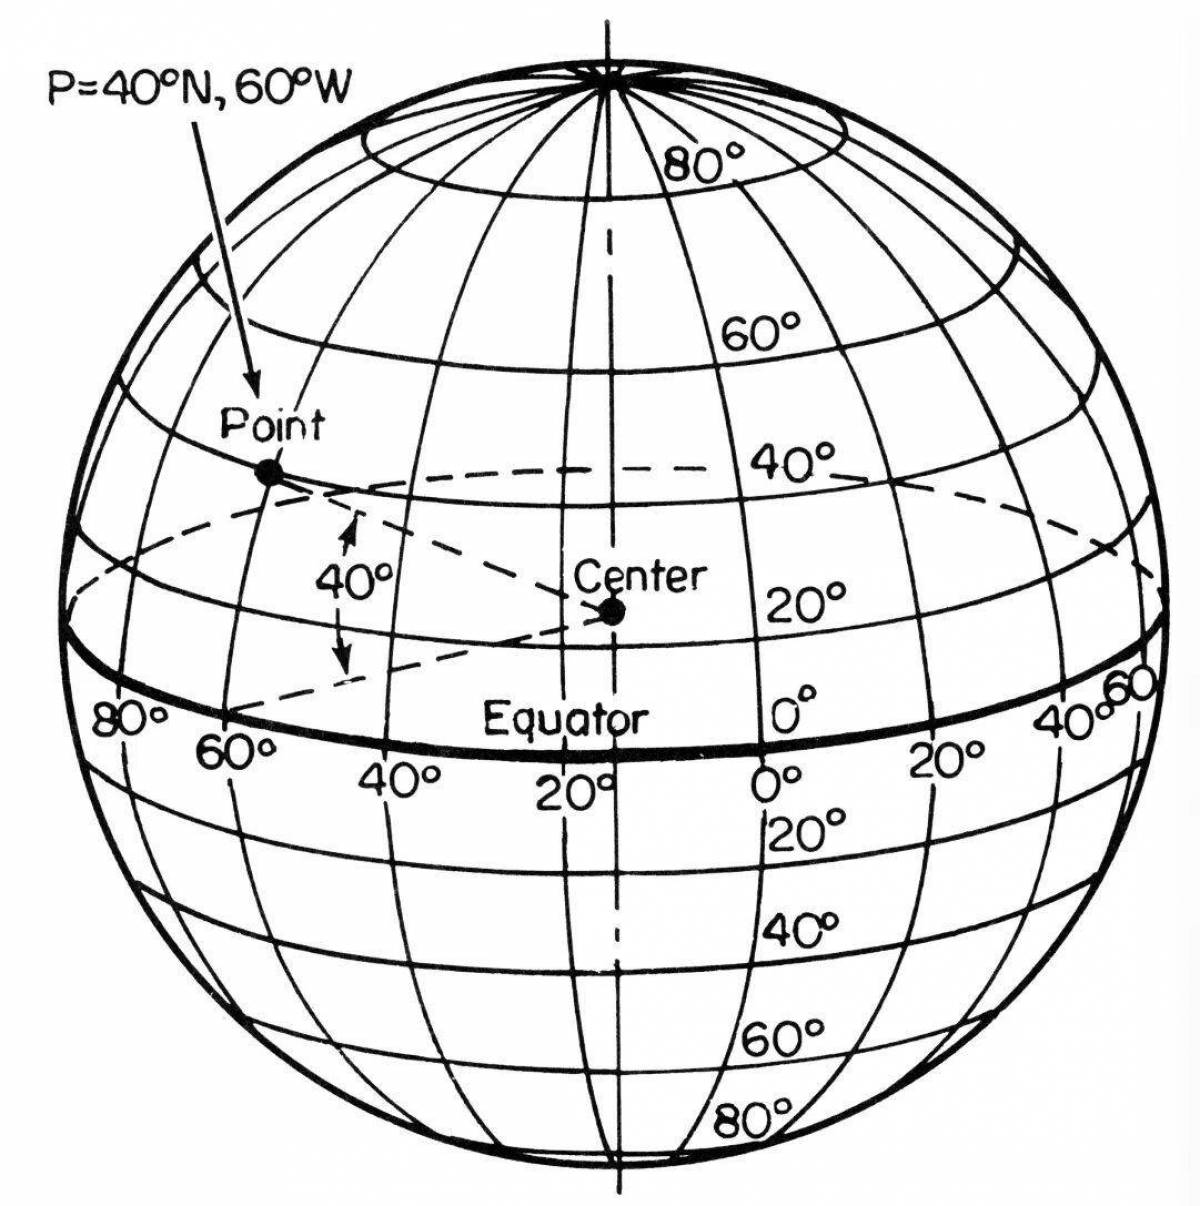 Географическая точка на экваторе